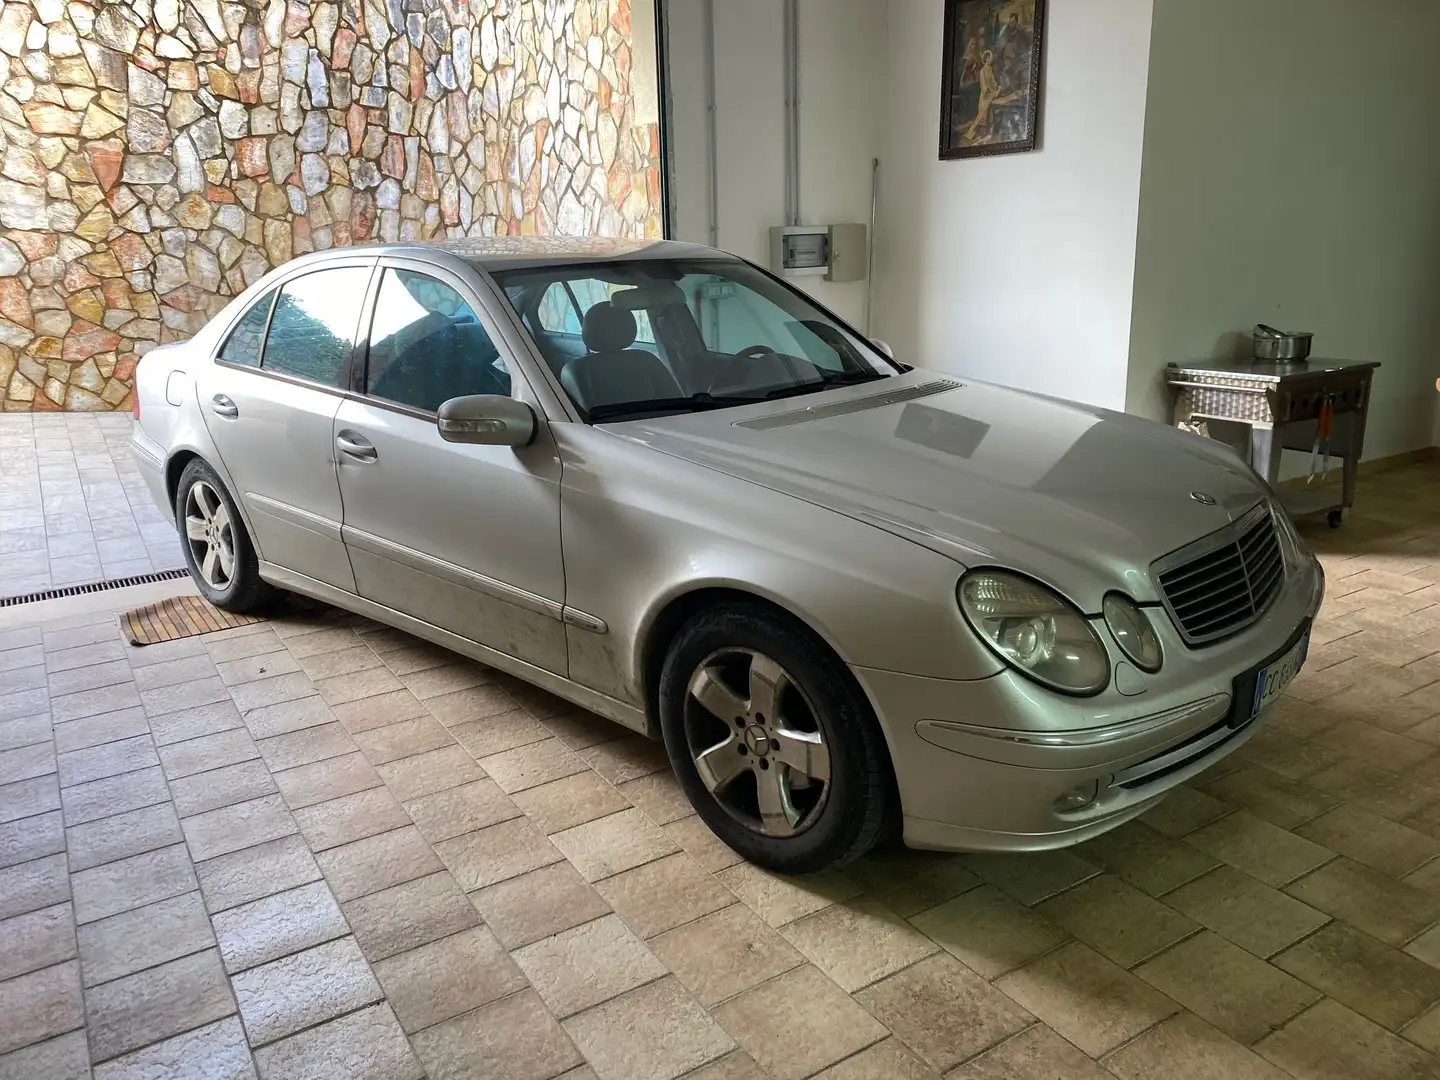 usato Mercedes-Benz E 220 Berlina a Alcamo - Trapani - Tp per € 2.600,-